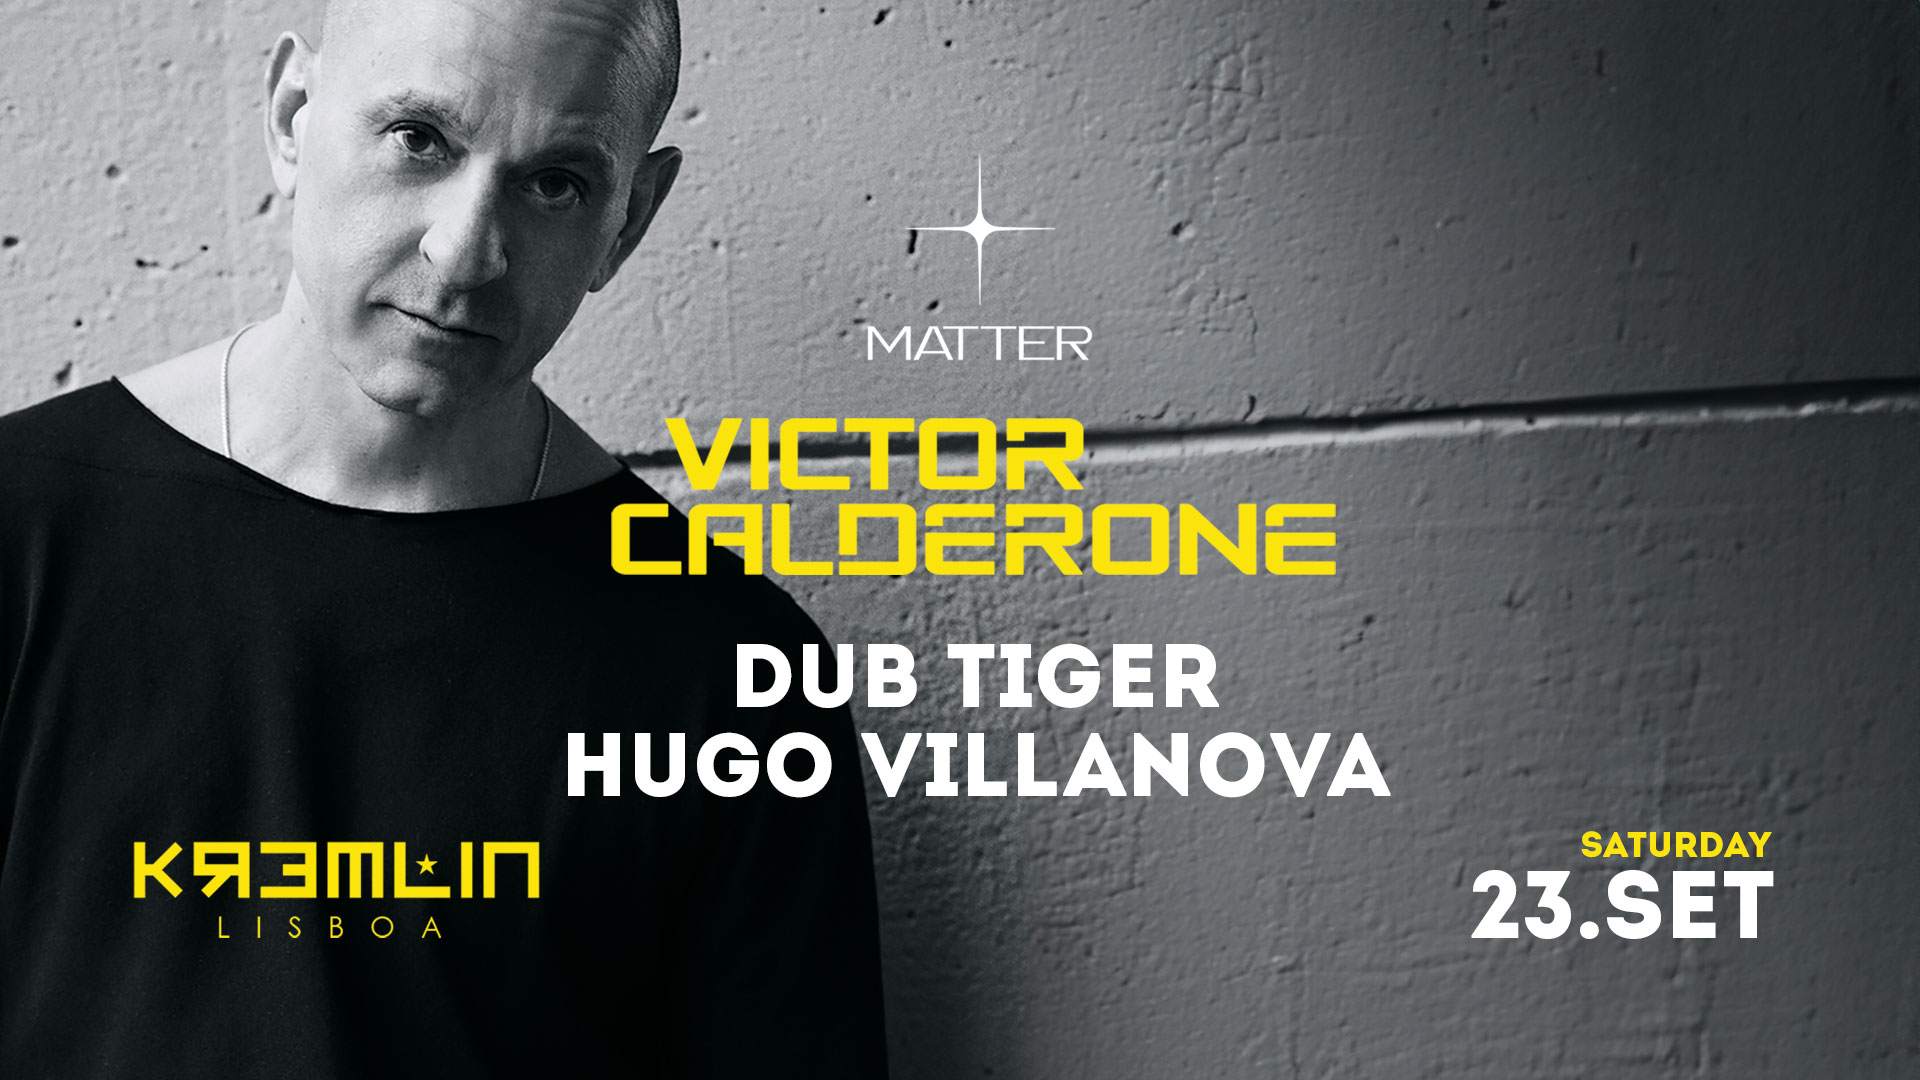 [MATTER+] - Victor Calderone, Dub Tiger, Hugo Villanova - Página frontal